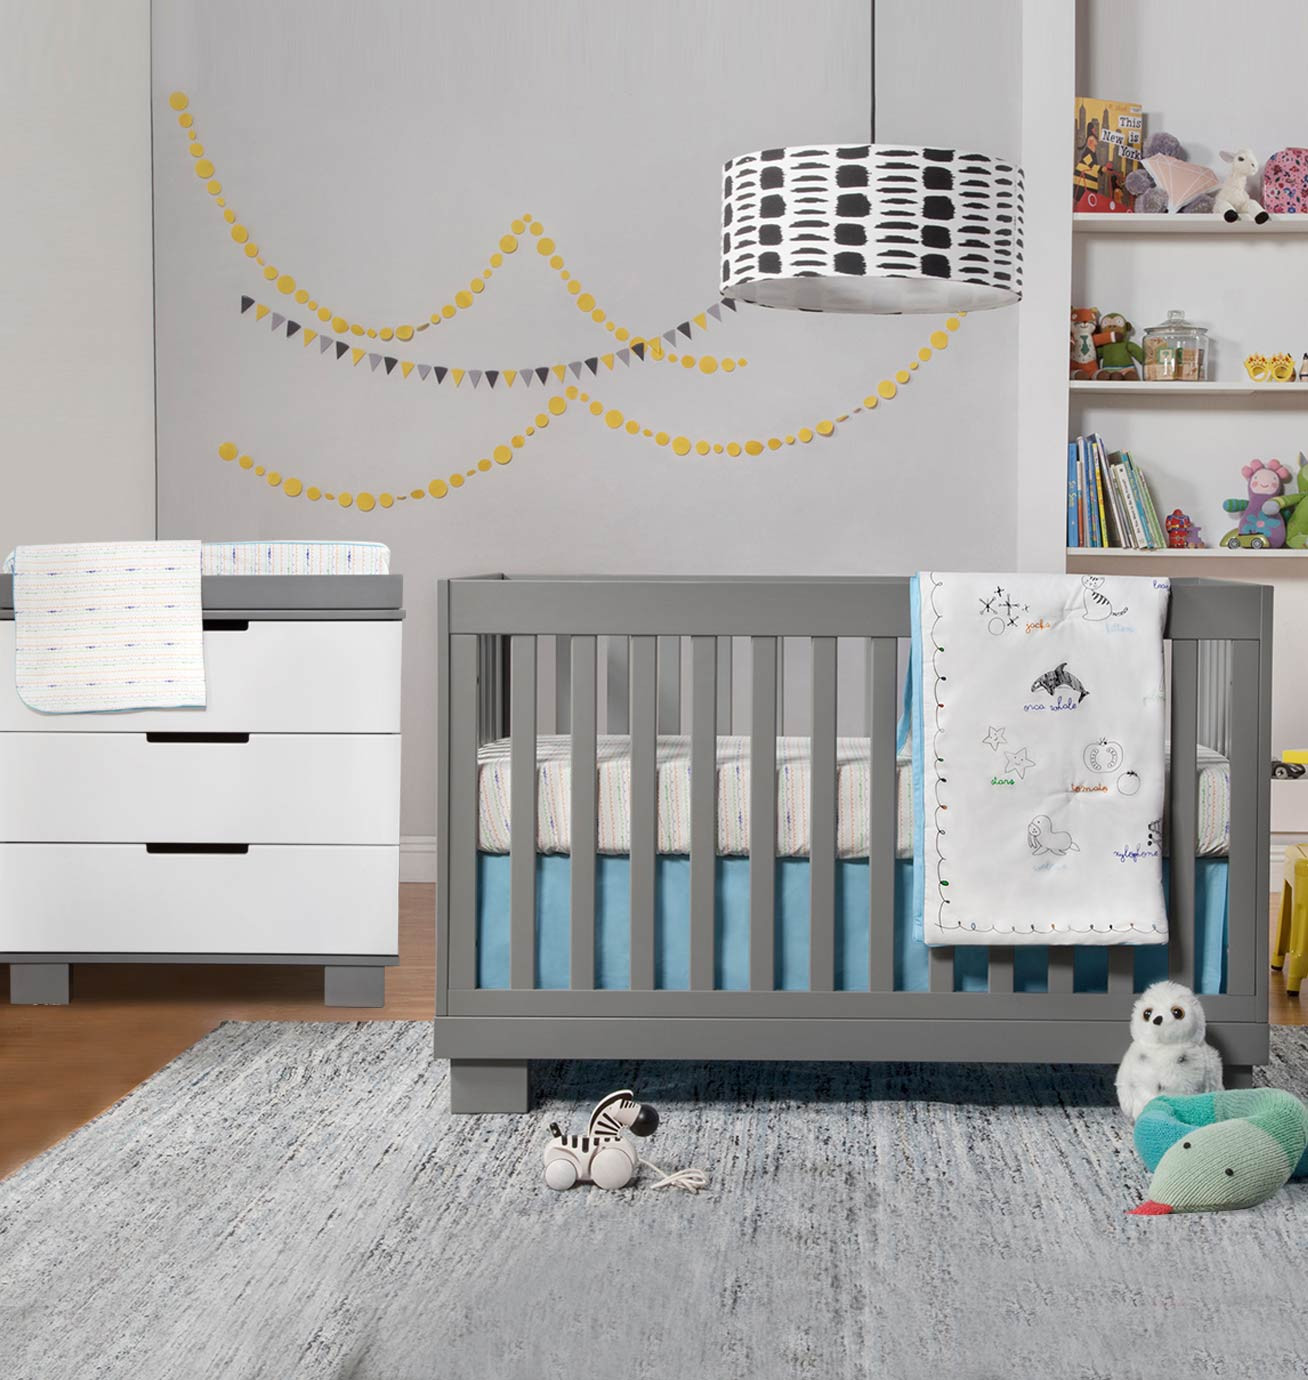 White Dresser For Baby Room
 White Dresser For Baby Room BestDressers 2019